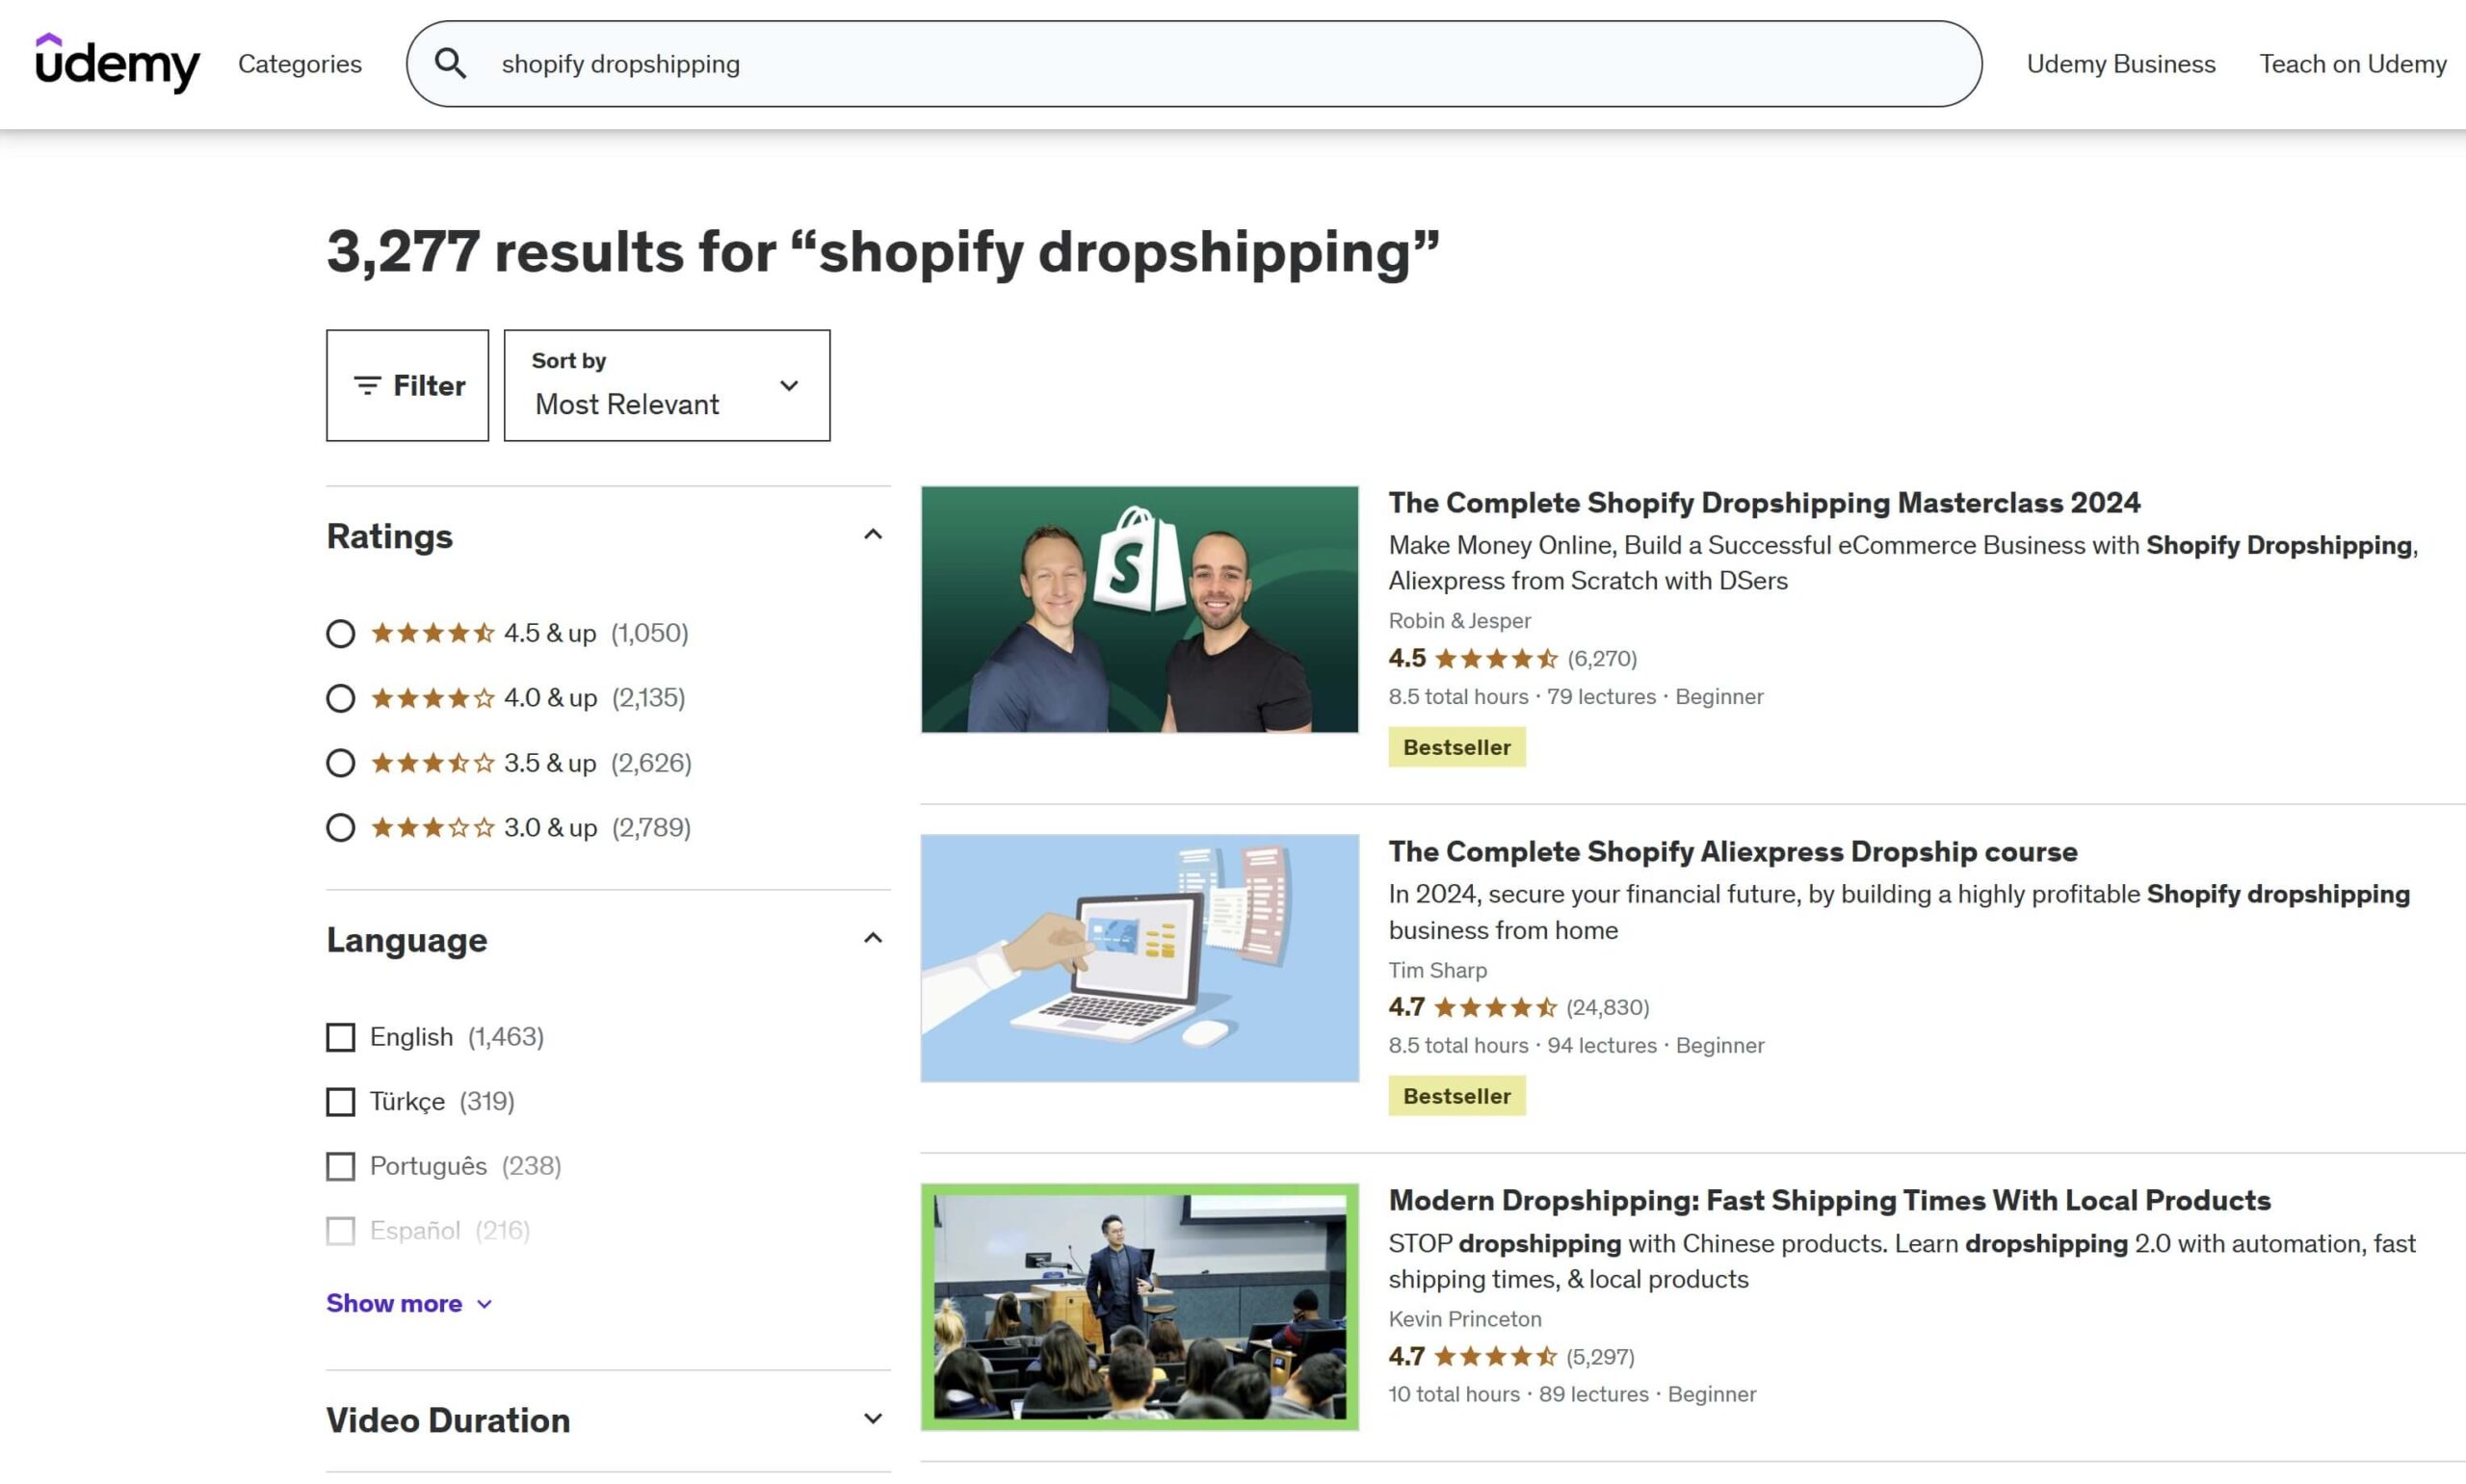 Shopify Dropshipping-Suchergebnisse auf Udemy